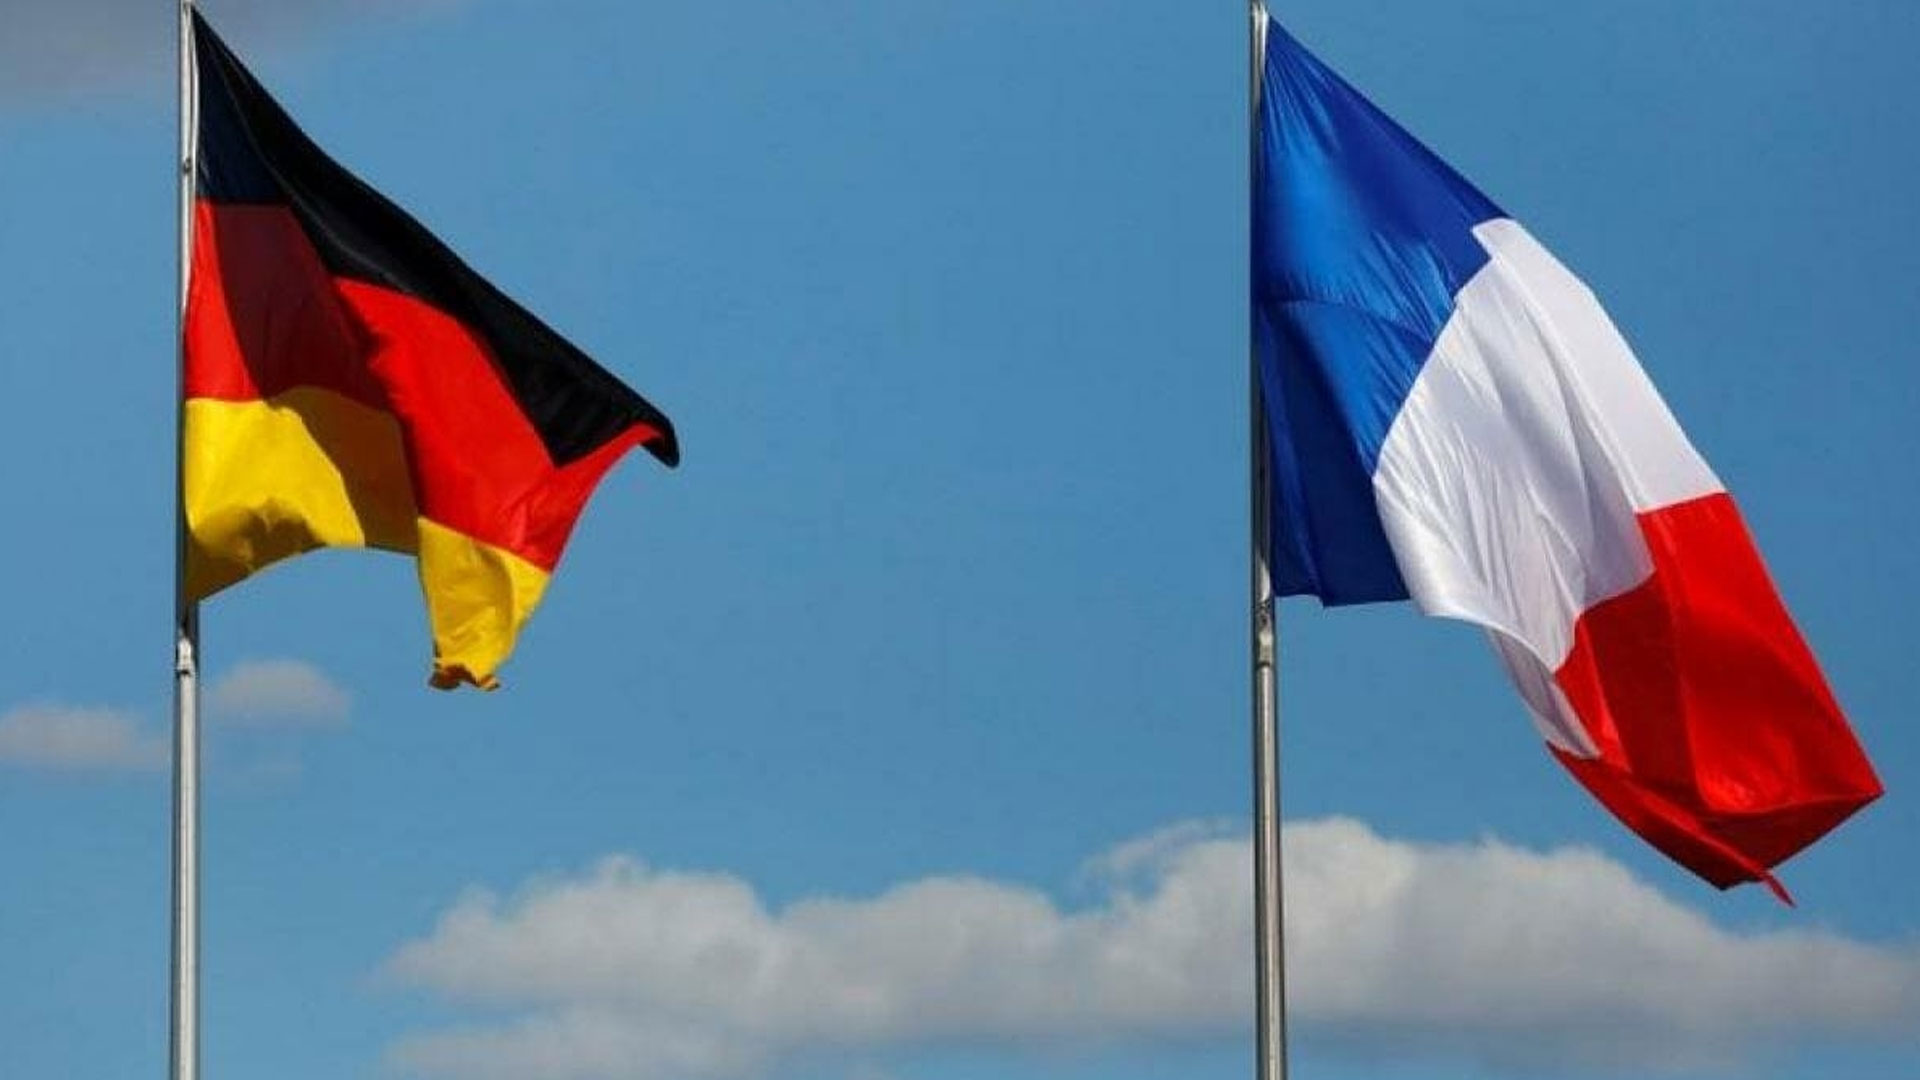 أسعار الكهرباء في المانيا وفرنسا - غضب في أوروبا ارتفاع جديد في أسعار الكهرباء بألمانيا وفرنسا واليكم النسبة الجديدة